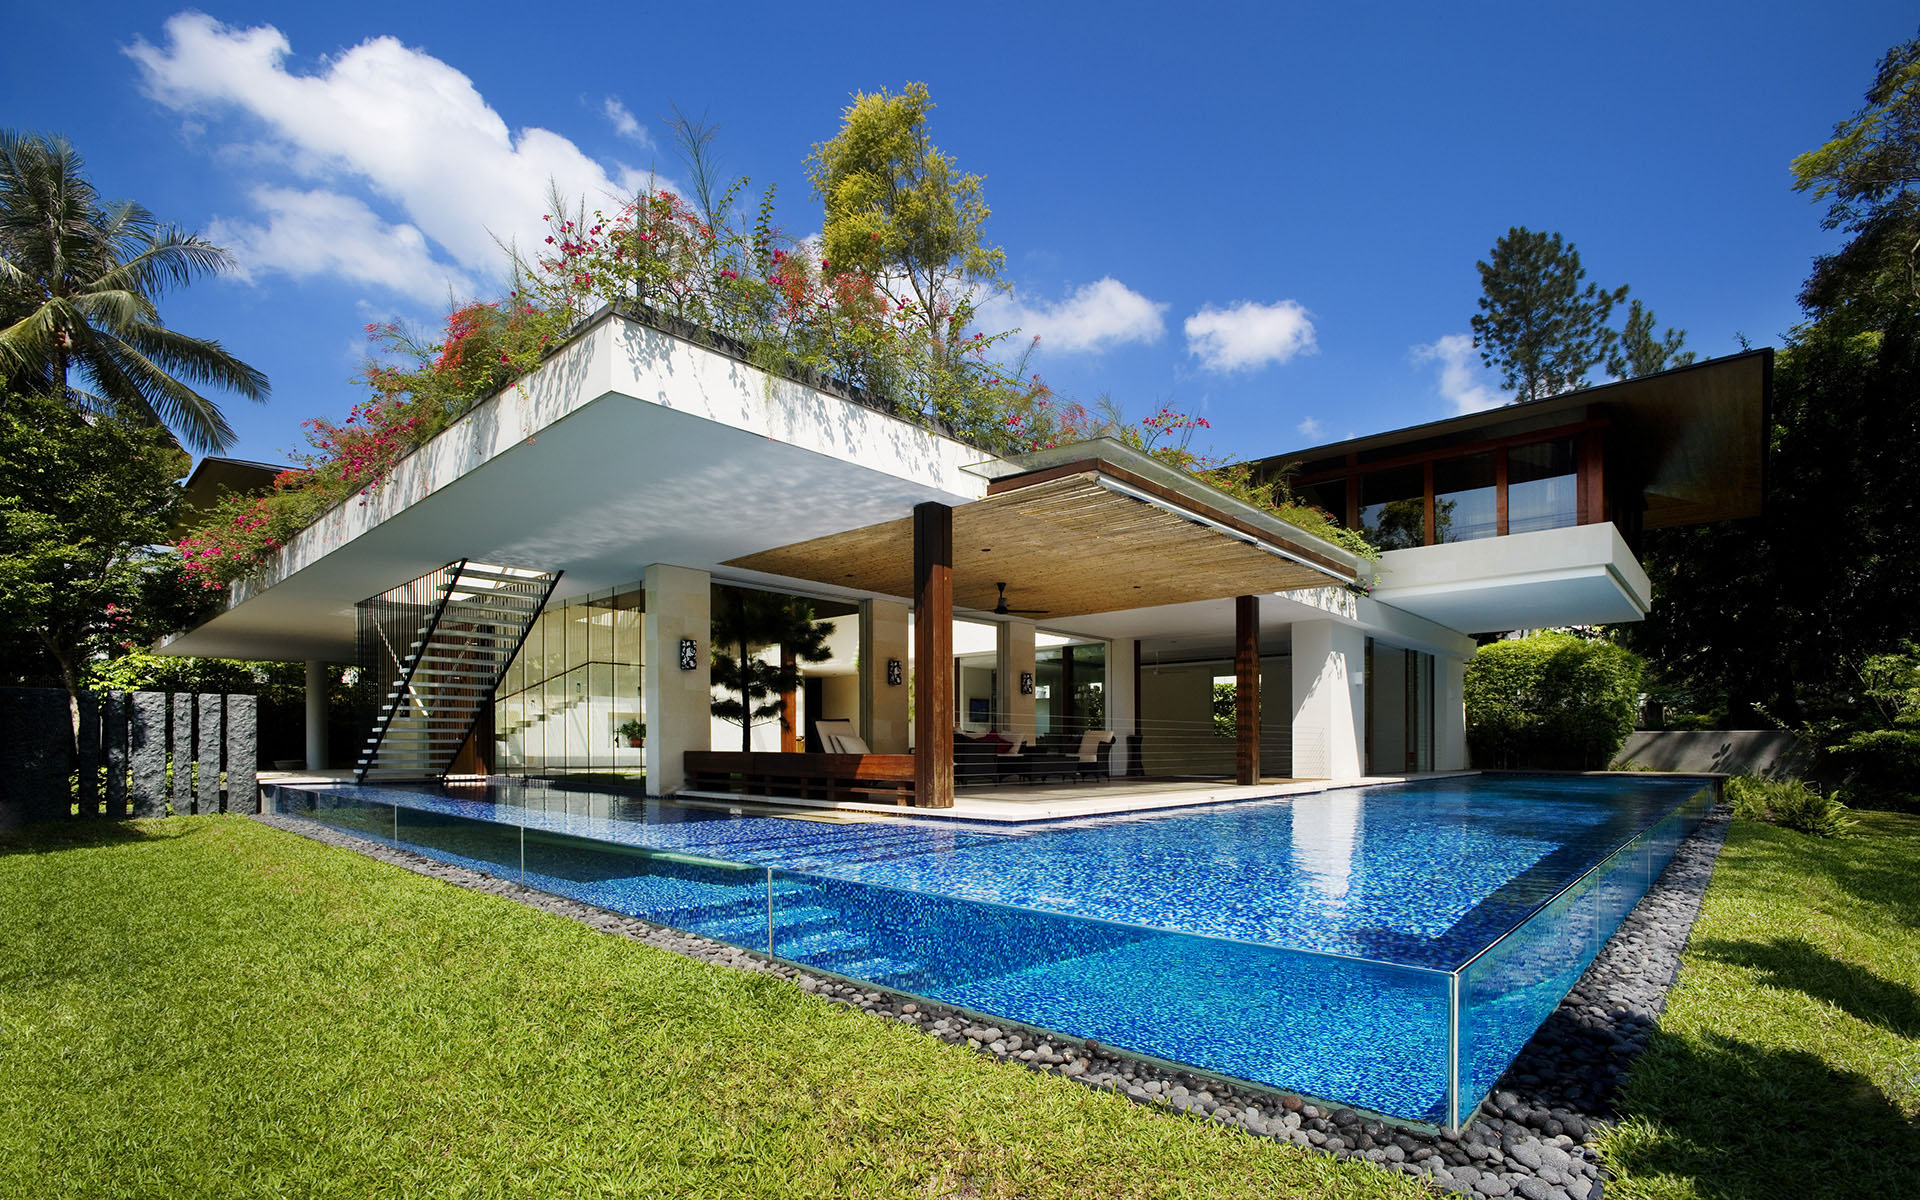 Rumah Tropis Modern